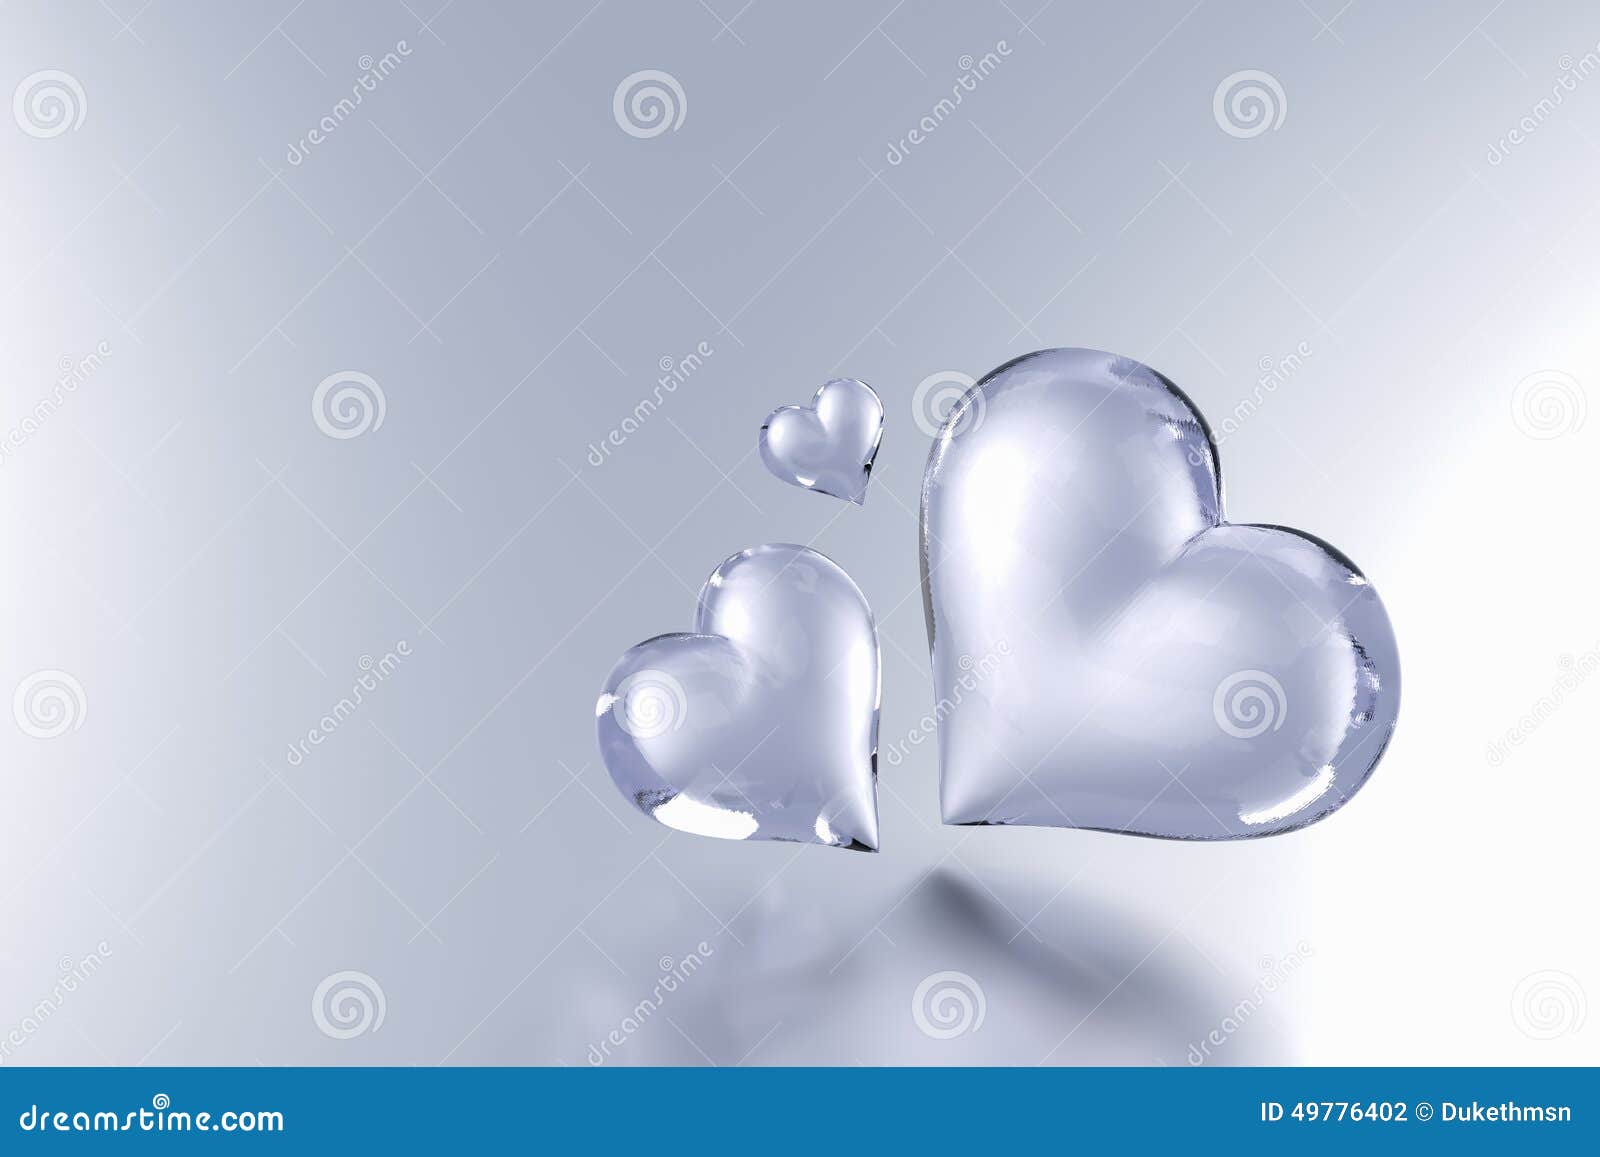 Glass Heart On White Background 3d Stock Illustration 489691549